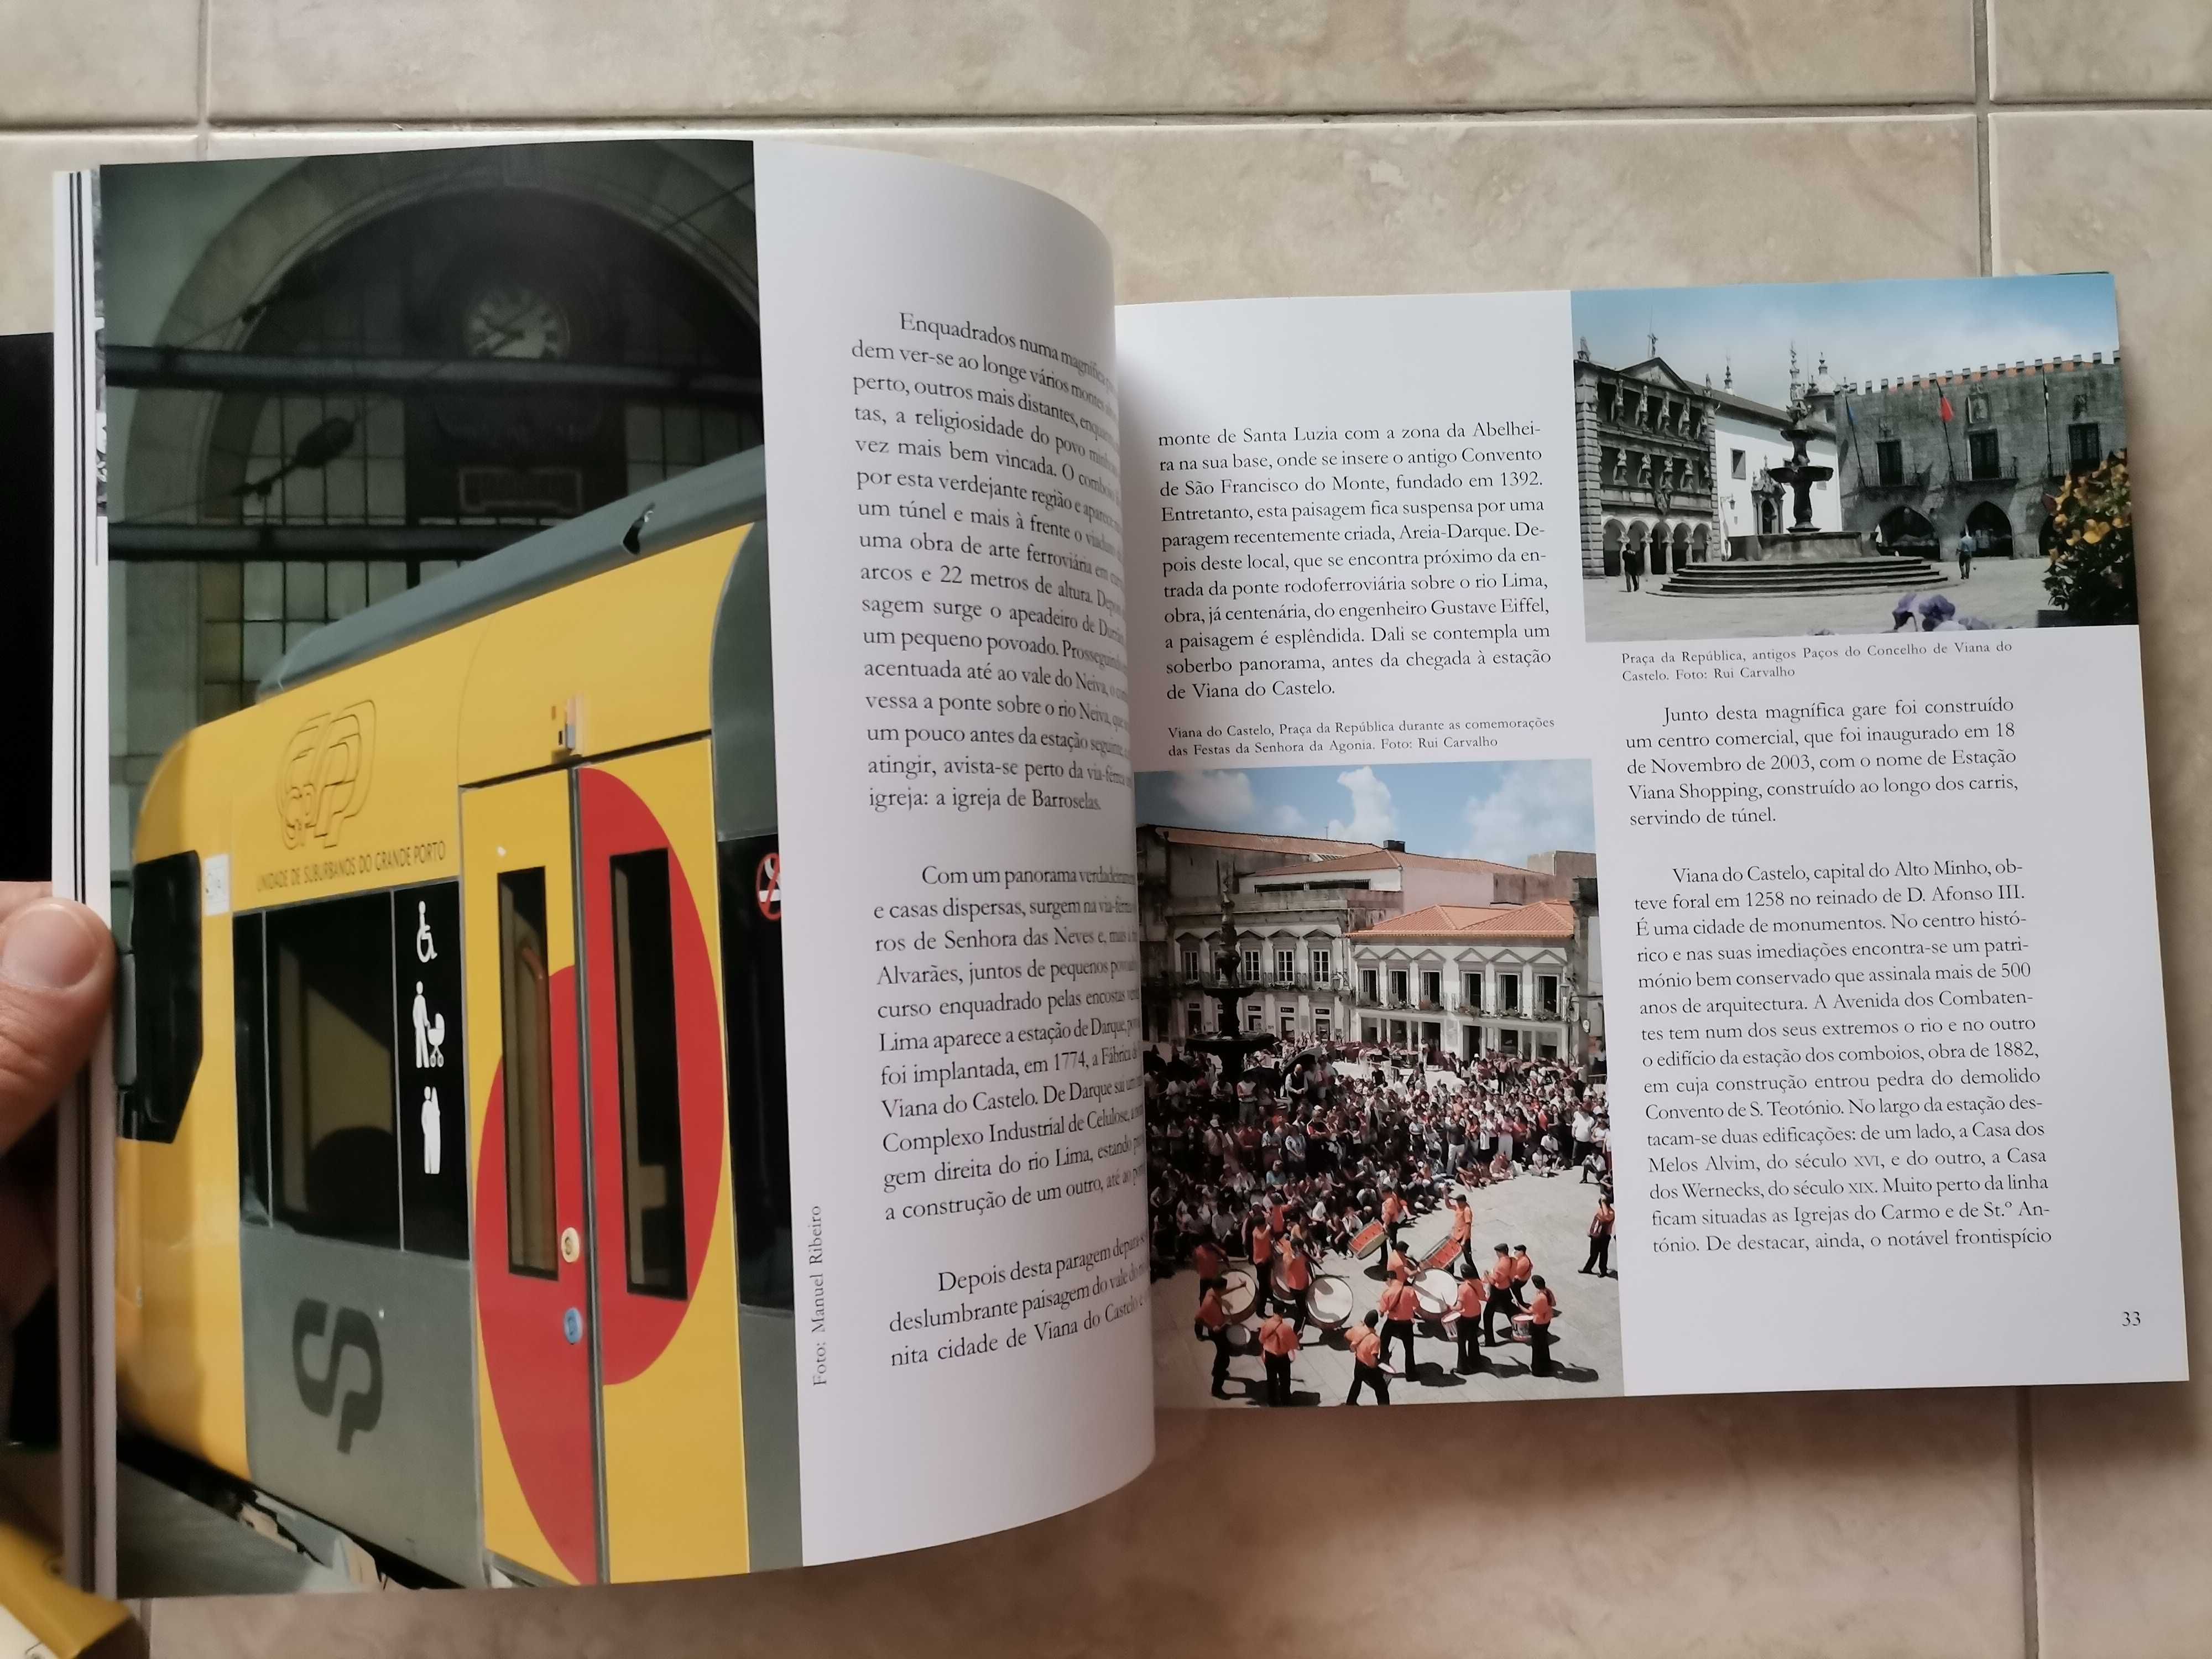 Portes Grátis - Os Comboios em Portugal - Volume II